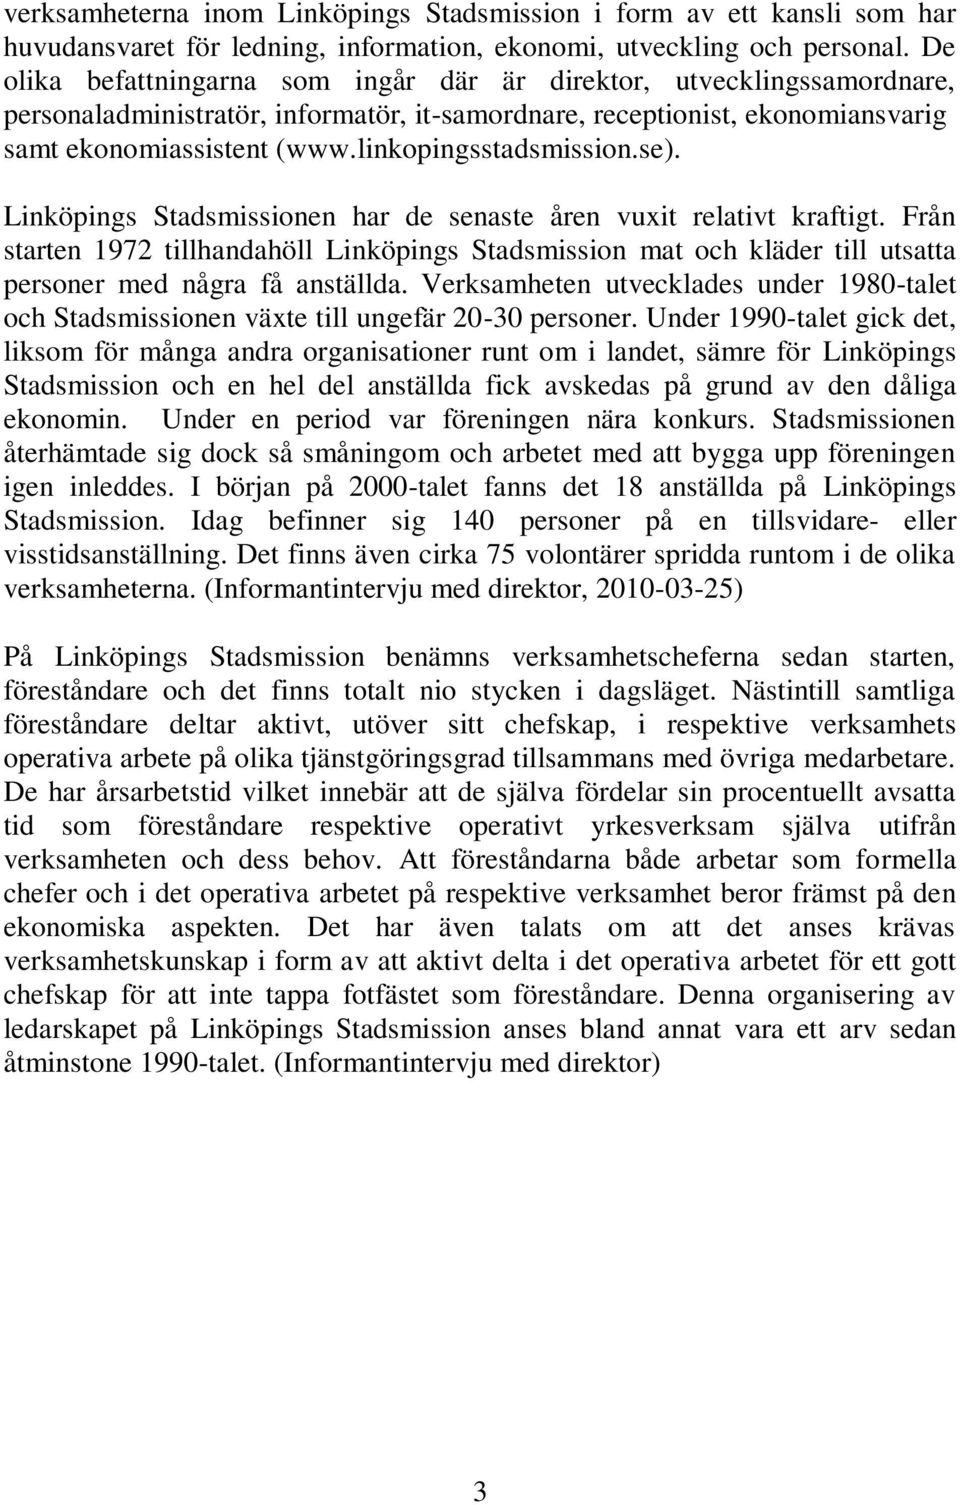 linkopingsstadsmission.se). Linköpings Stadsmissionen har de senaste åren vuxit relativt kraftigt.